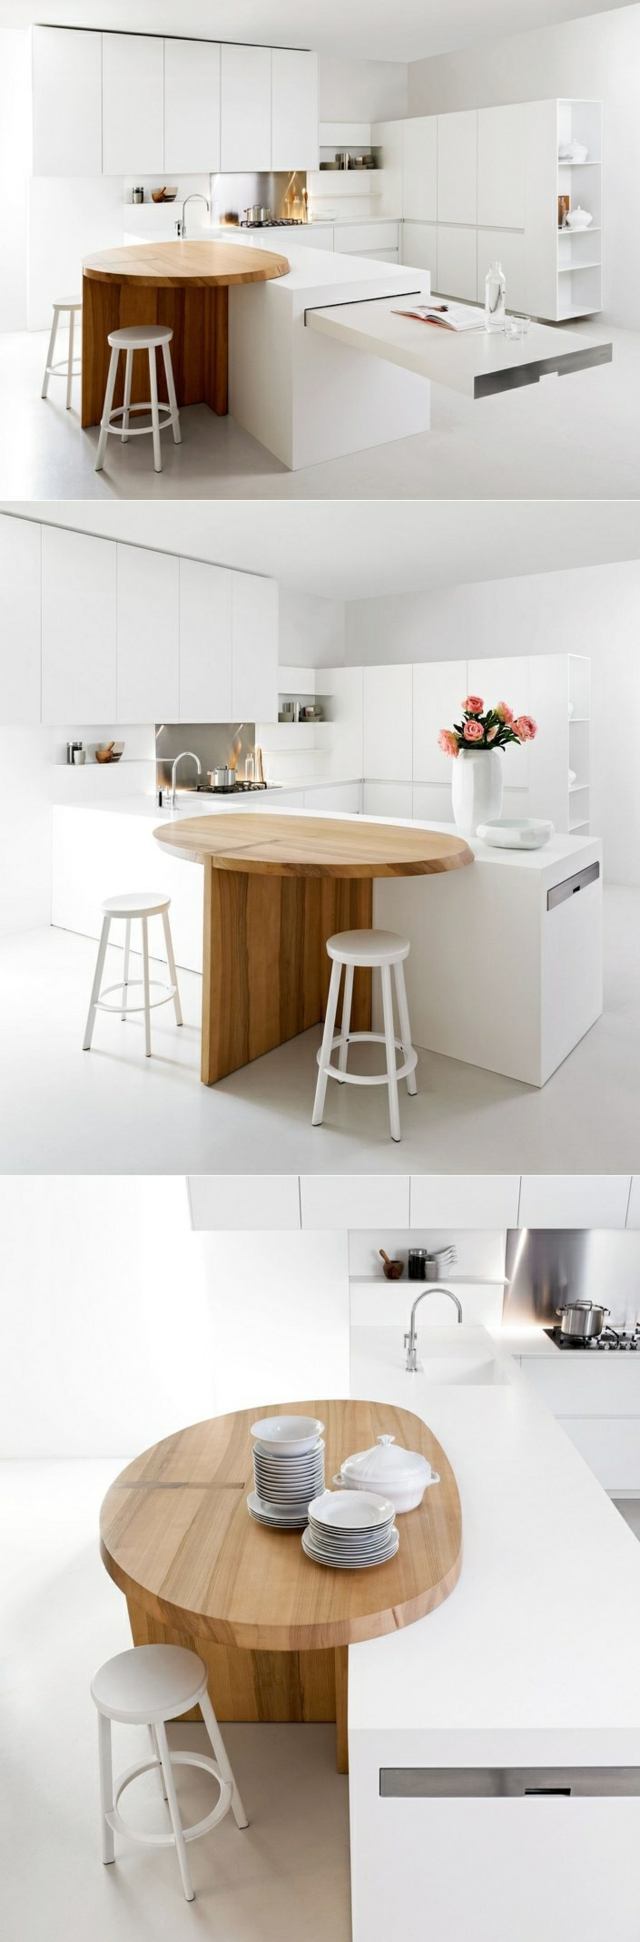 Cozinha em ilha redonda, balcão branco, cozinha equipada e minimalista moderna